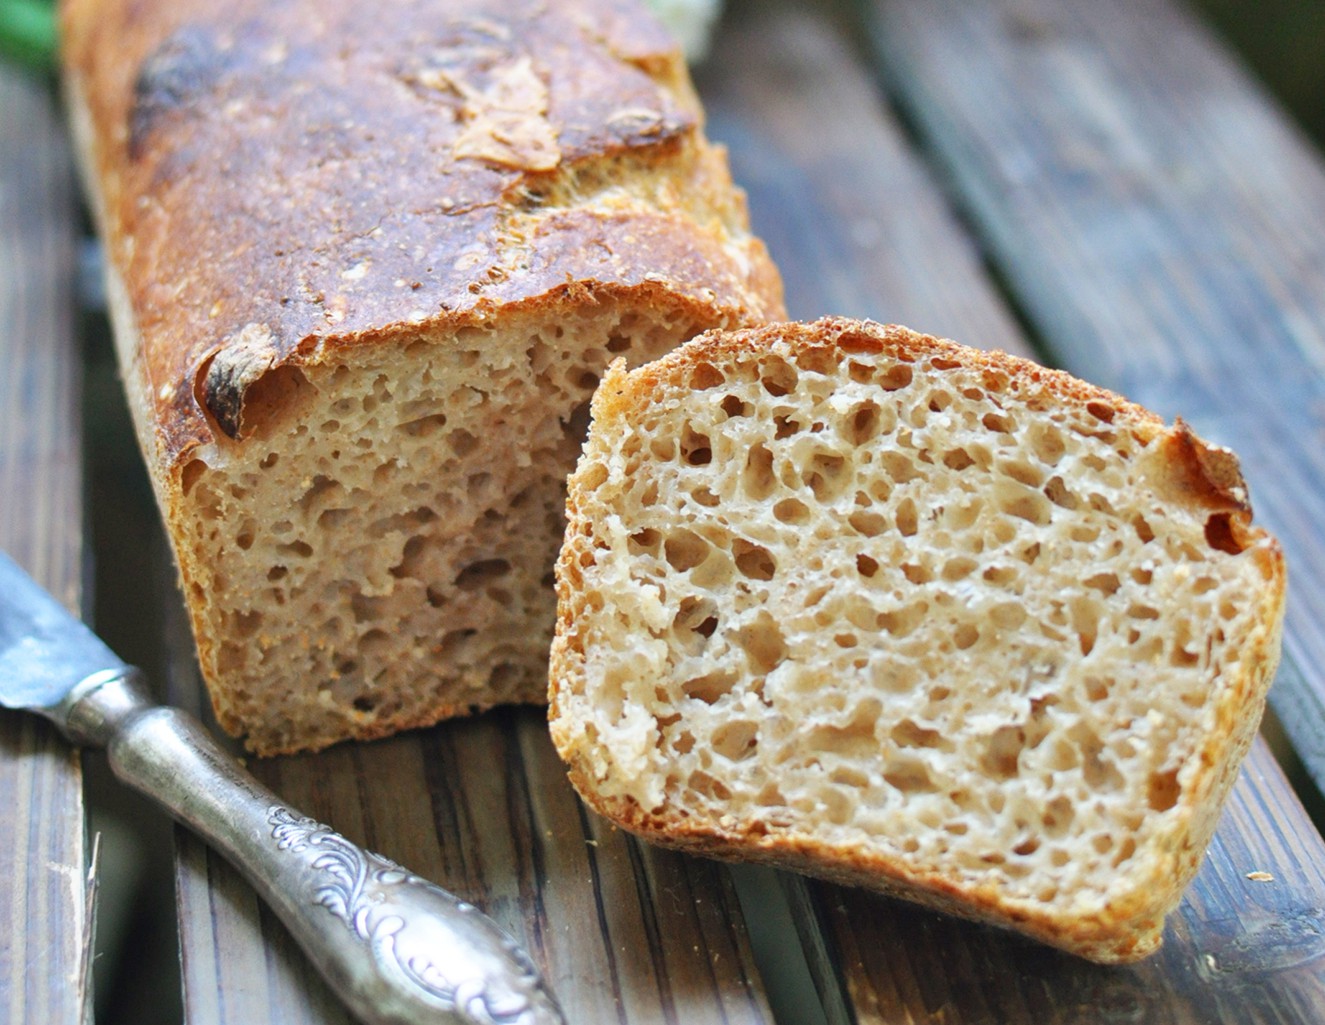 Хлеб пшеничный цельнозерновой 75% влажности